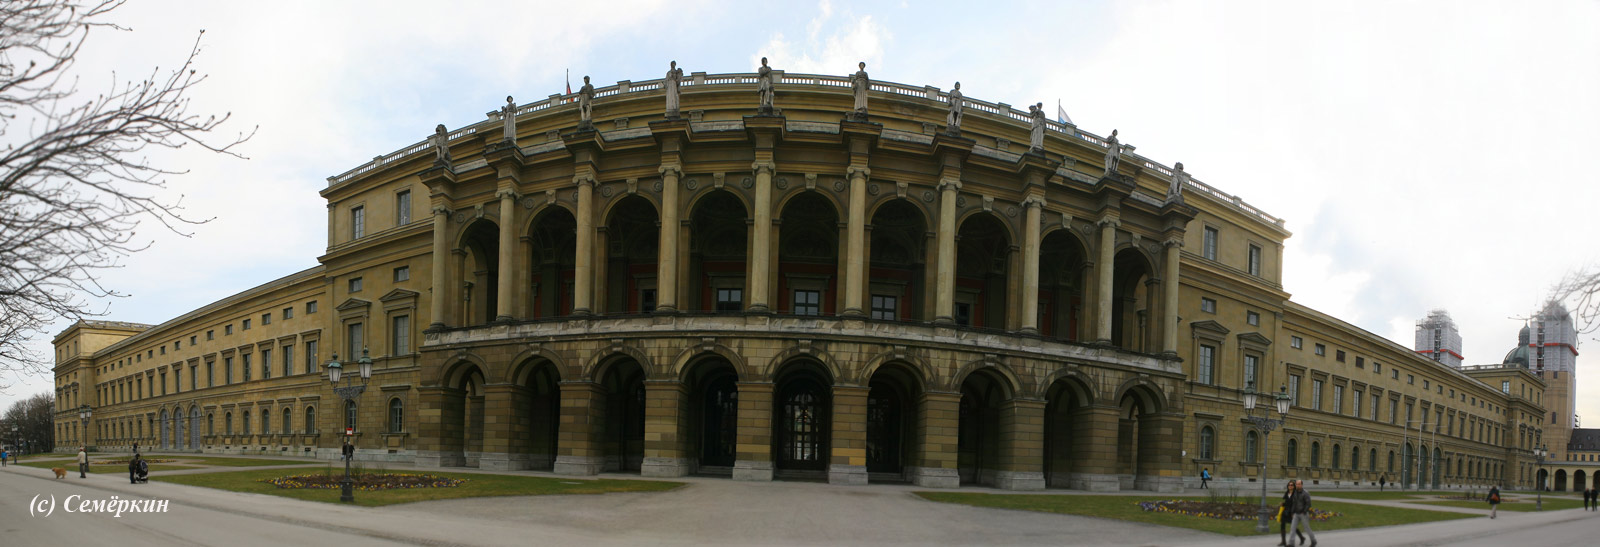 Мюнхен Достопримечательности - Мюнхенская резиденция Munchner Residenz